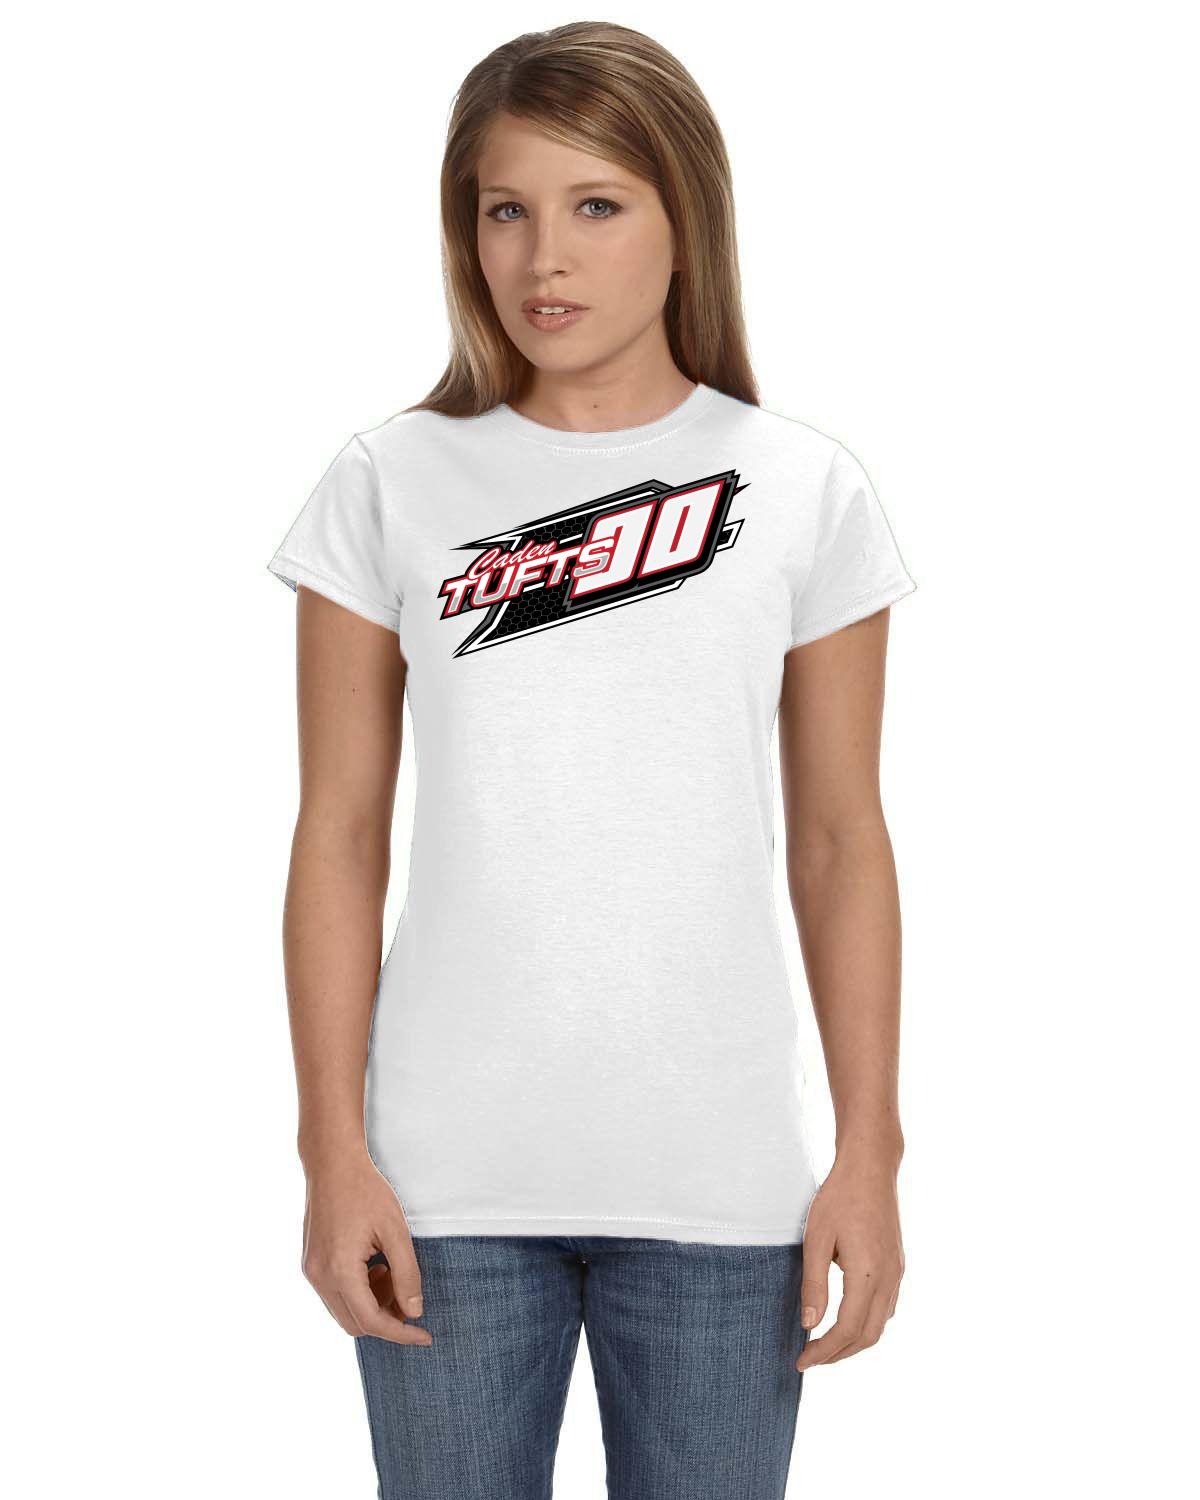 Caden Tufts Legends Racing Ladies fit tshirt